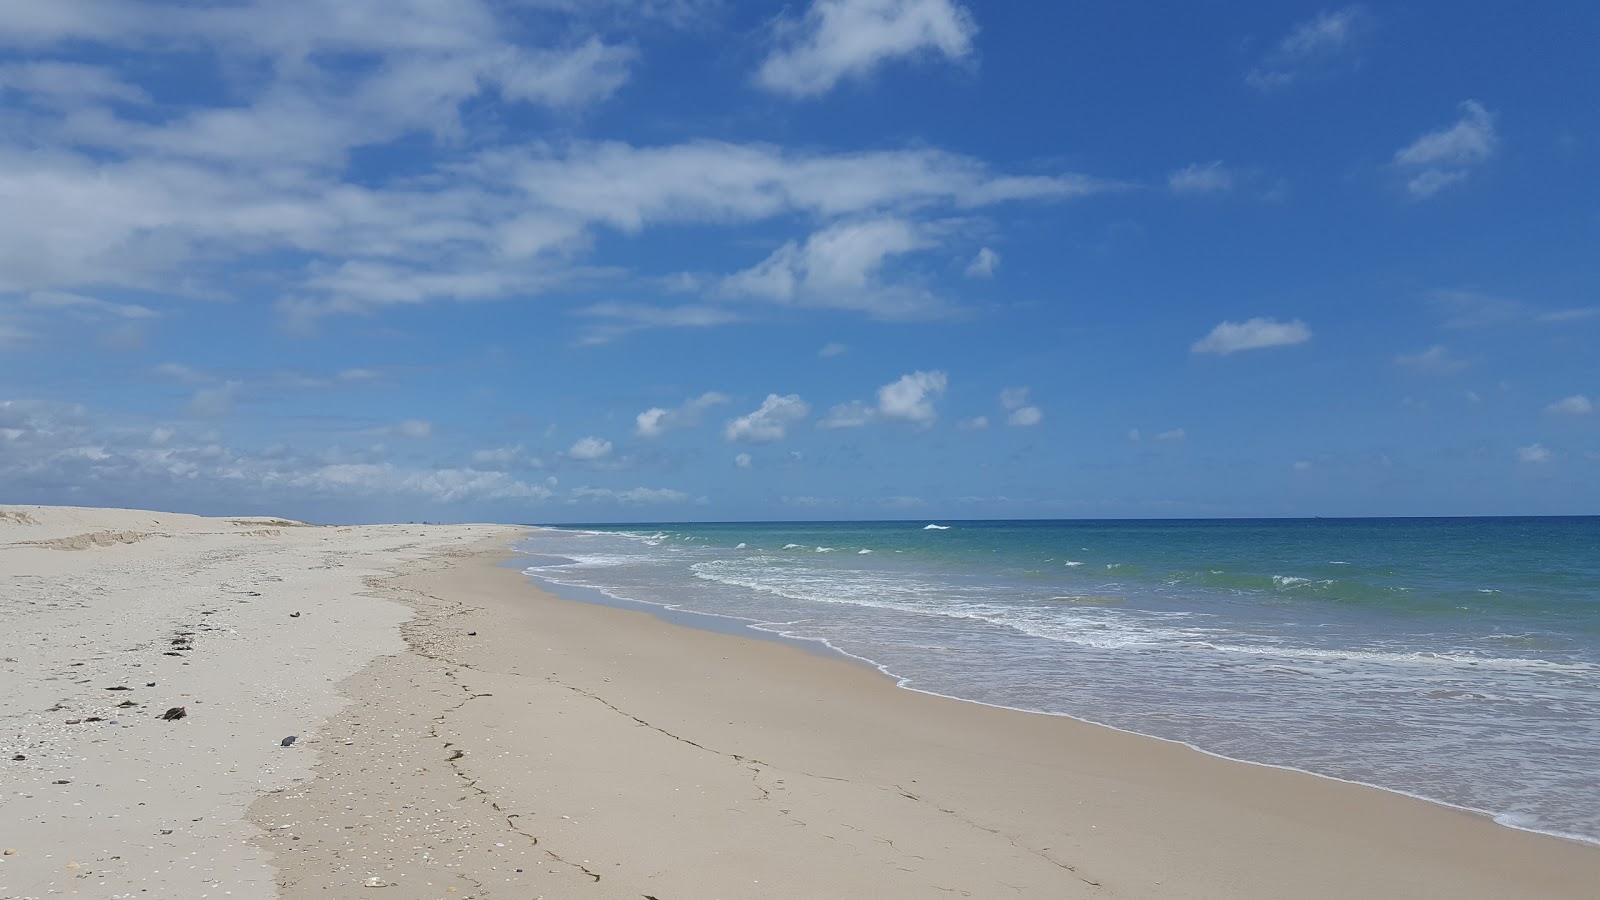 Barra da Fuseta'in fotoğrafı i̇nce kahverengi kum yüzey ile